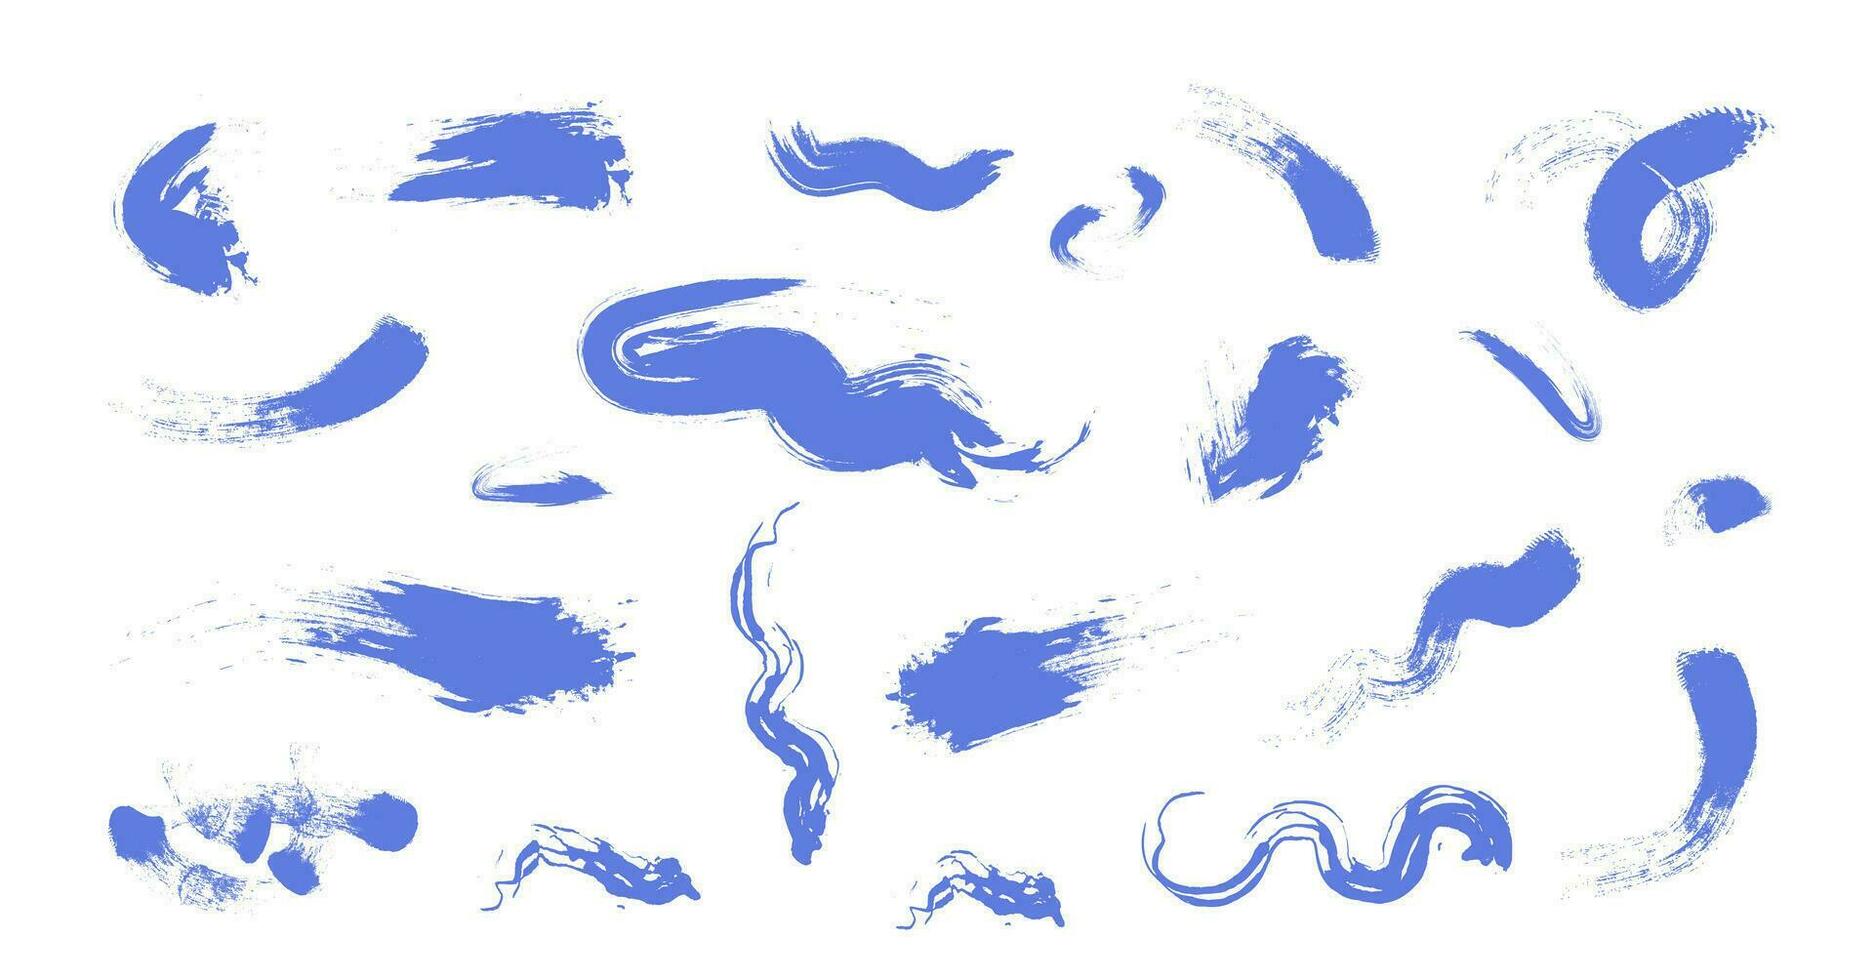 abstract borstel beroertes reeks hand- getrokken vector illustratie, vormloos inkt spatten, getextureerde vlekken, grunge ontwerp elementen verzameling, abstract achtergrond